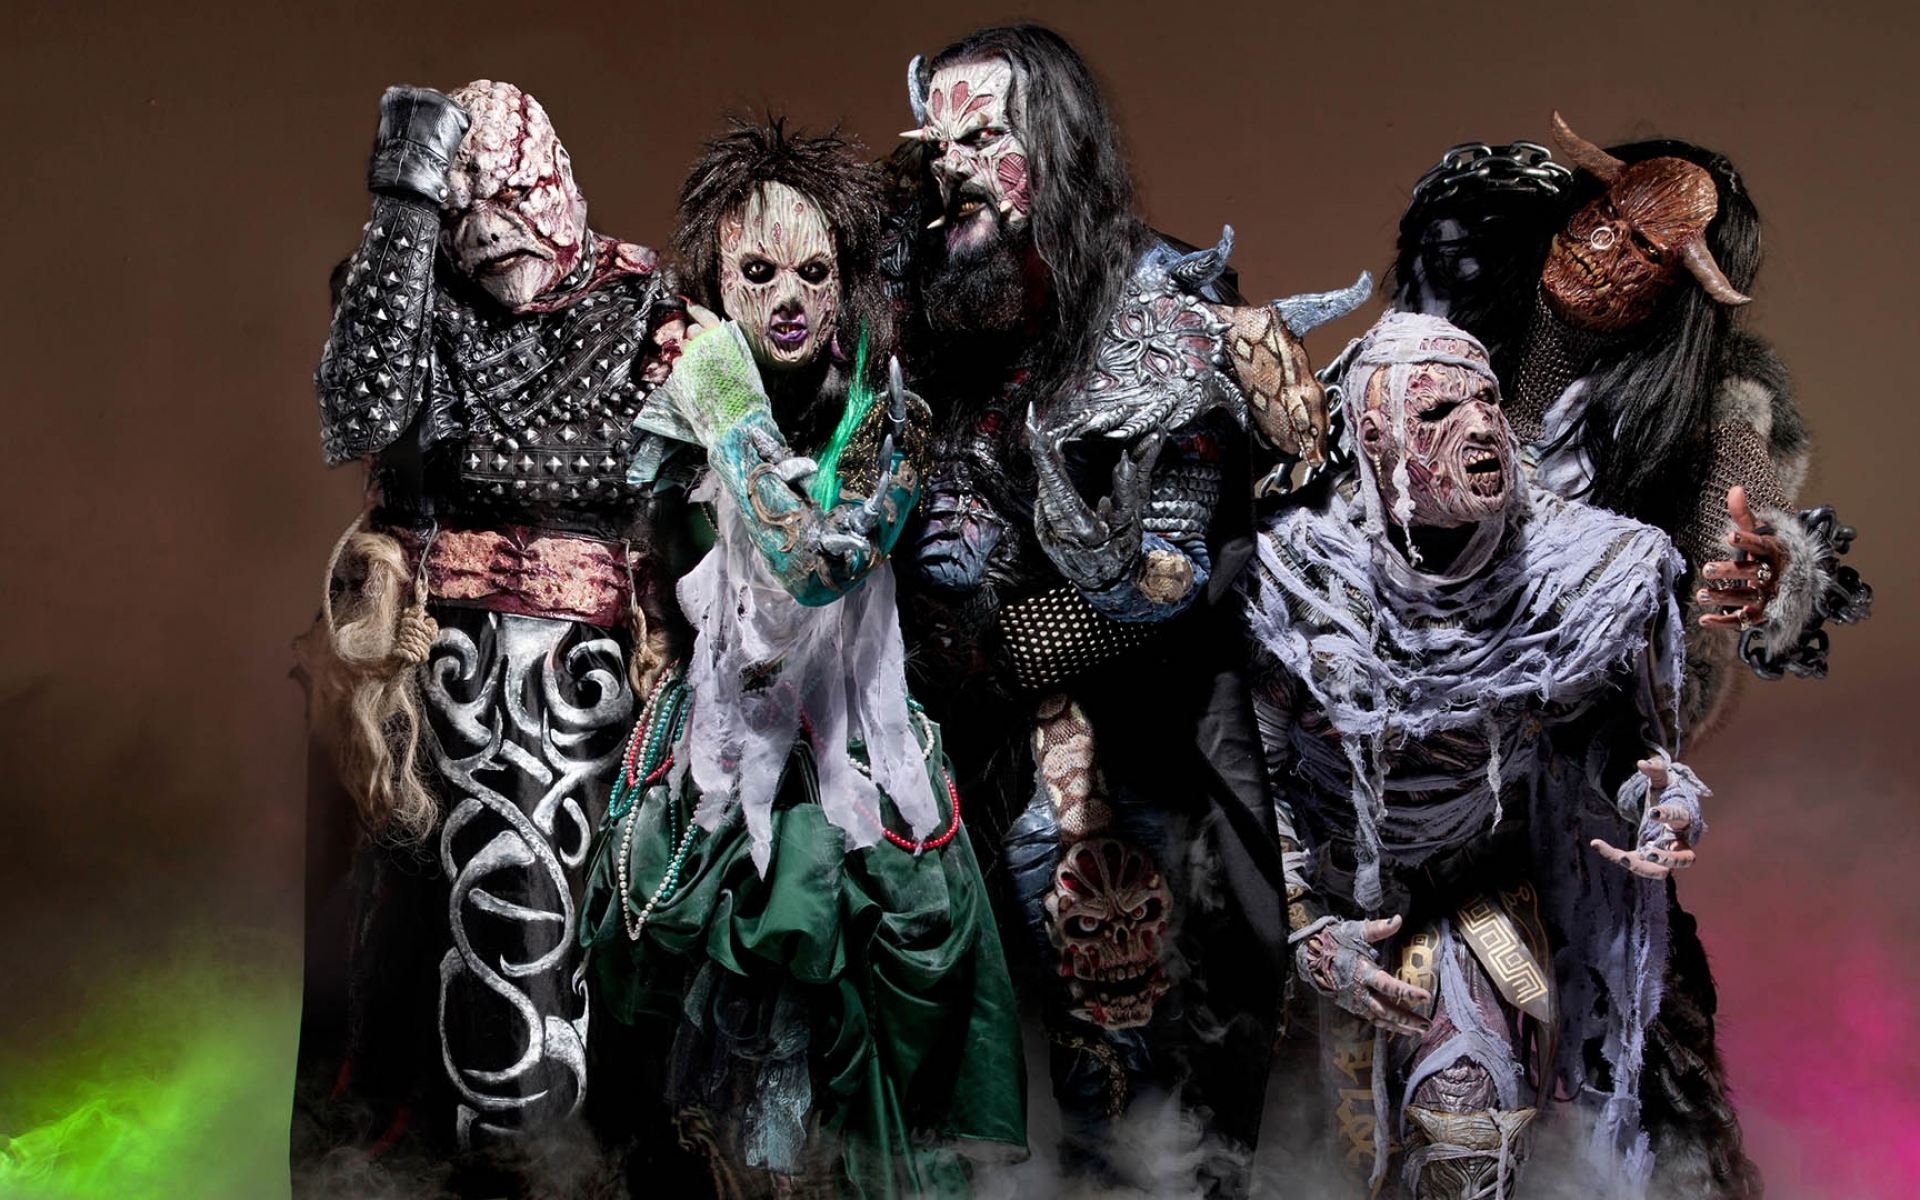 Картинки Lordi, костюмы, образ, взгляд, темнота фото и обои на рабочий стол